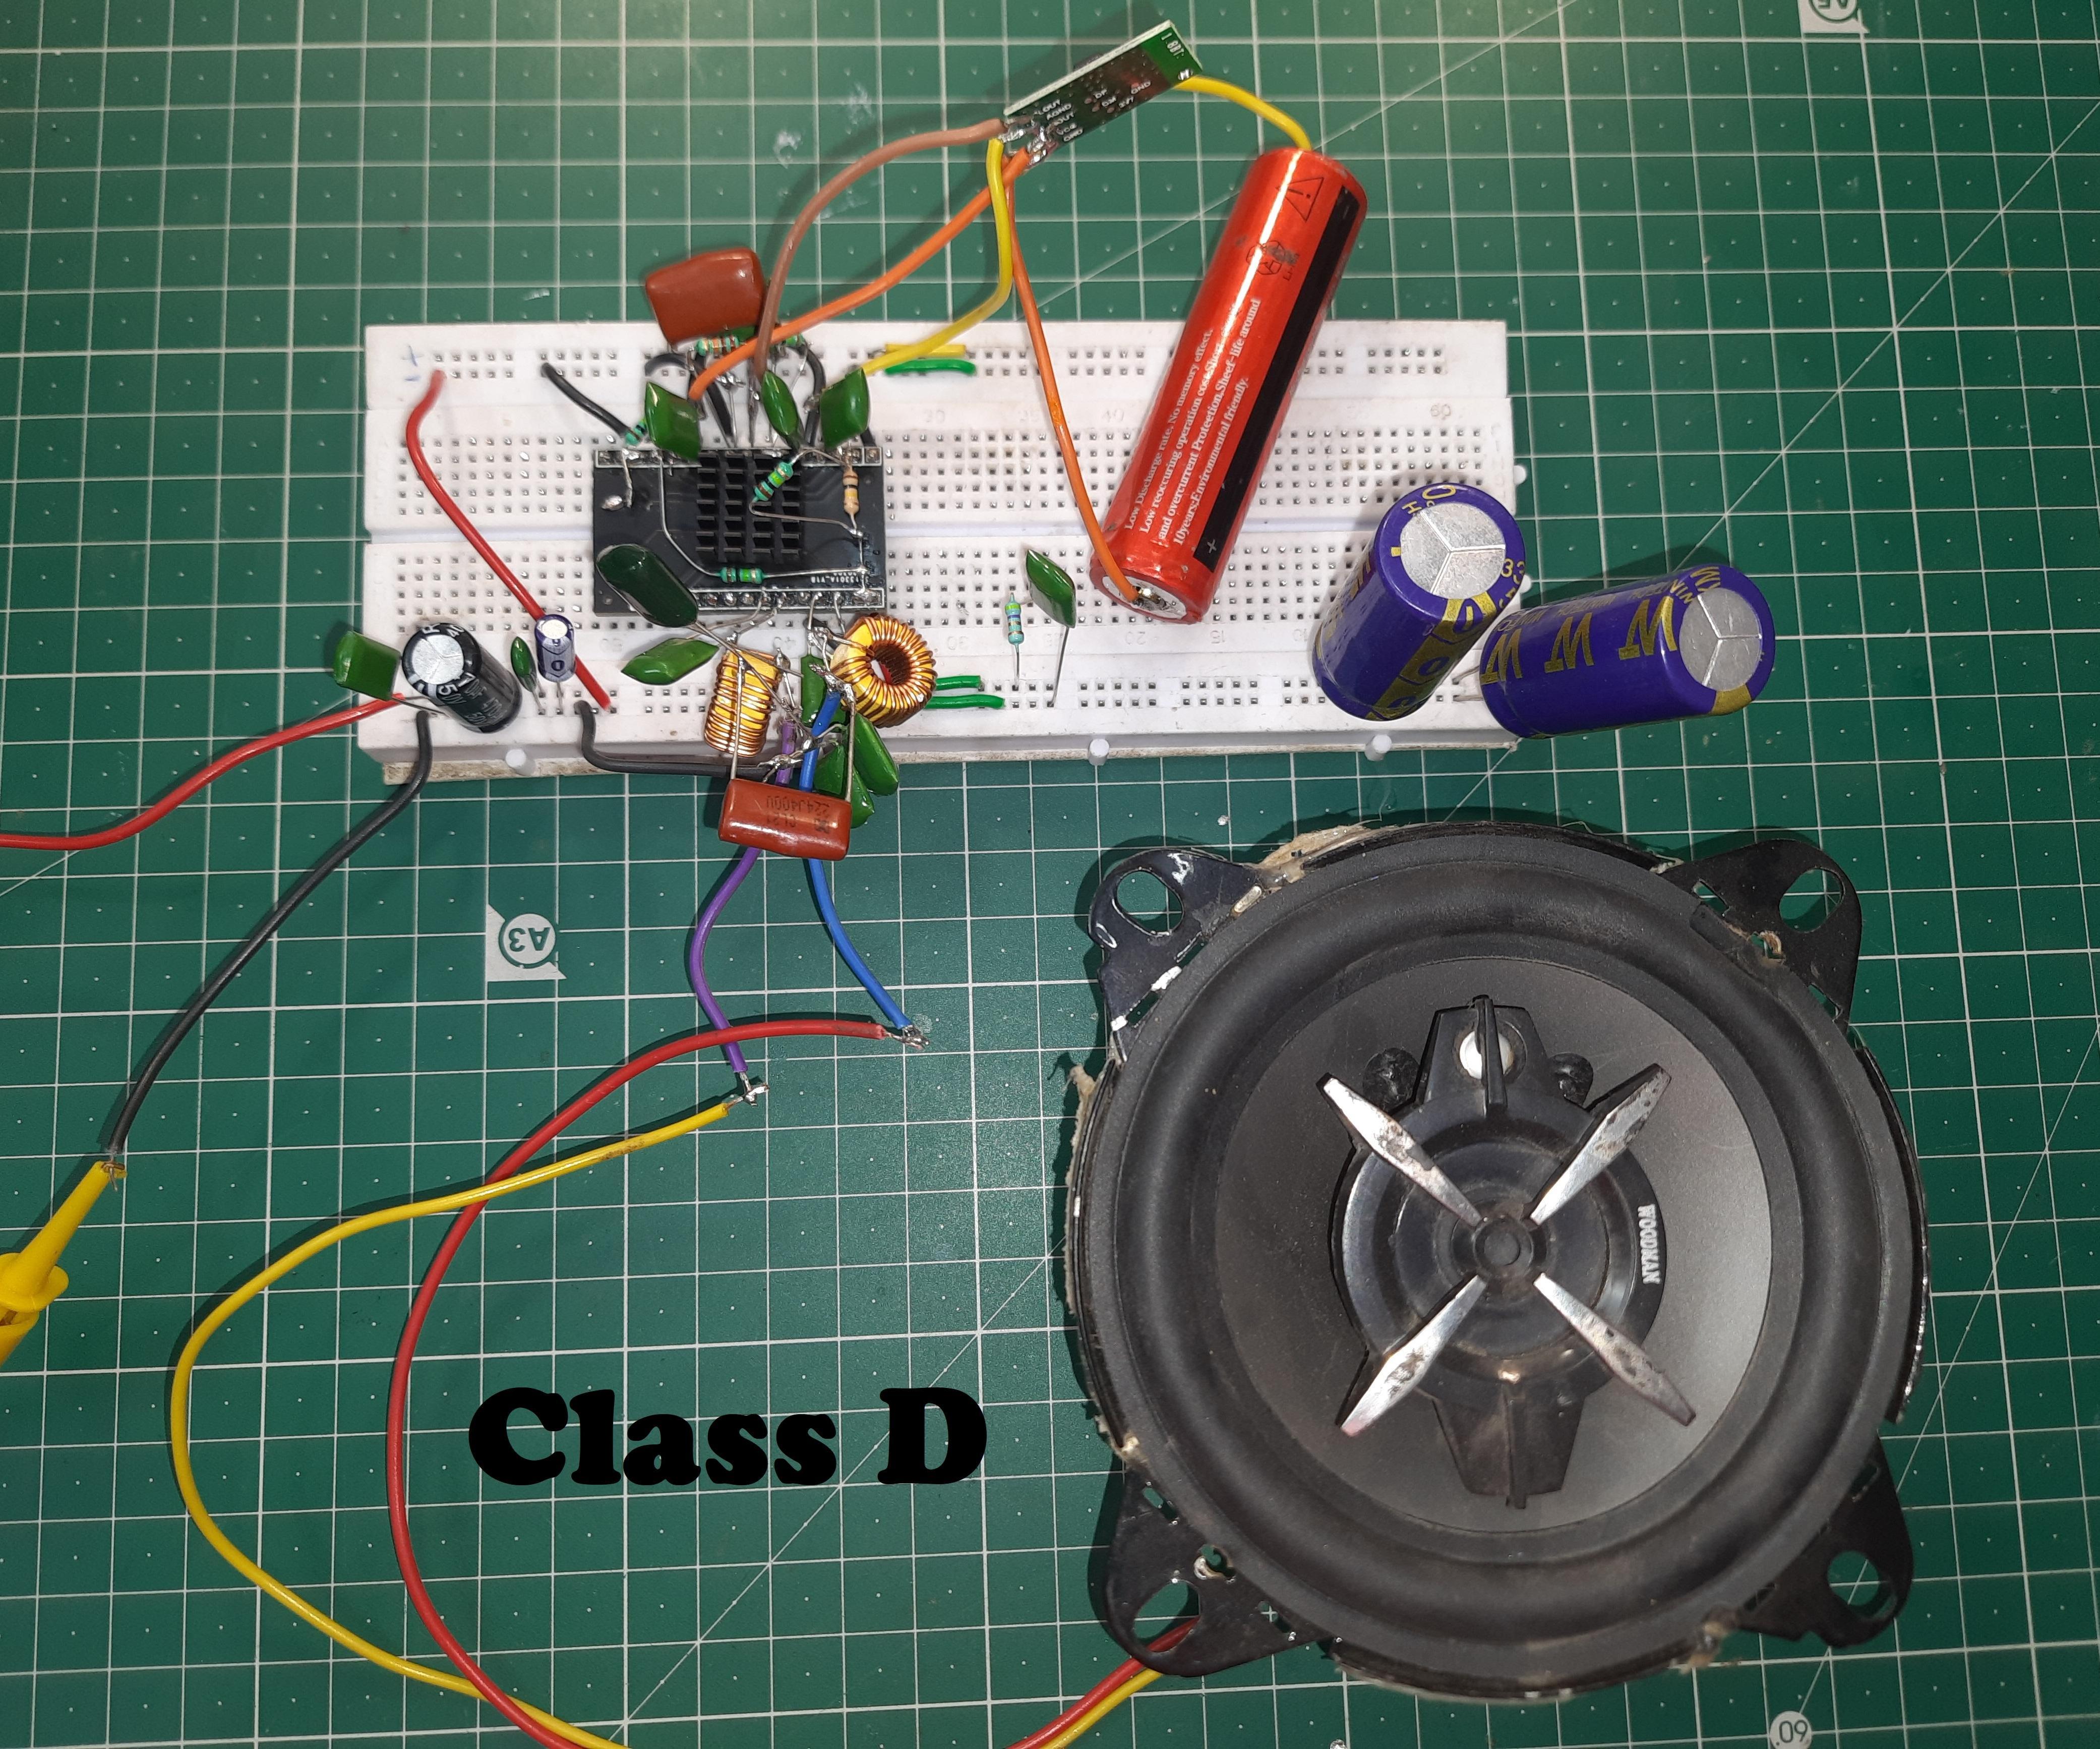 I Made My Own Class D Amplifier